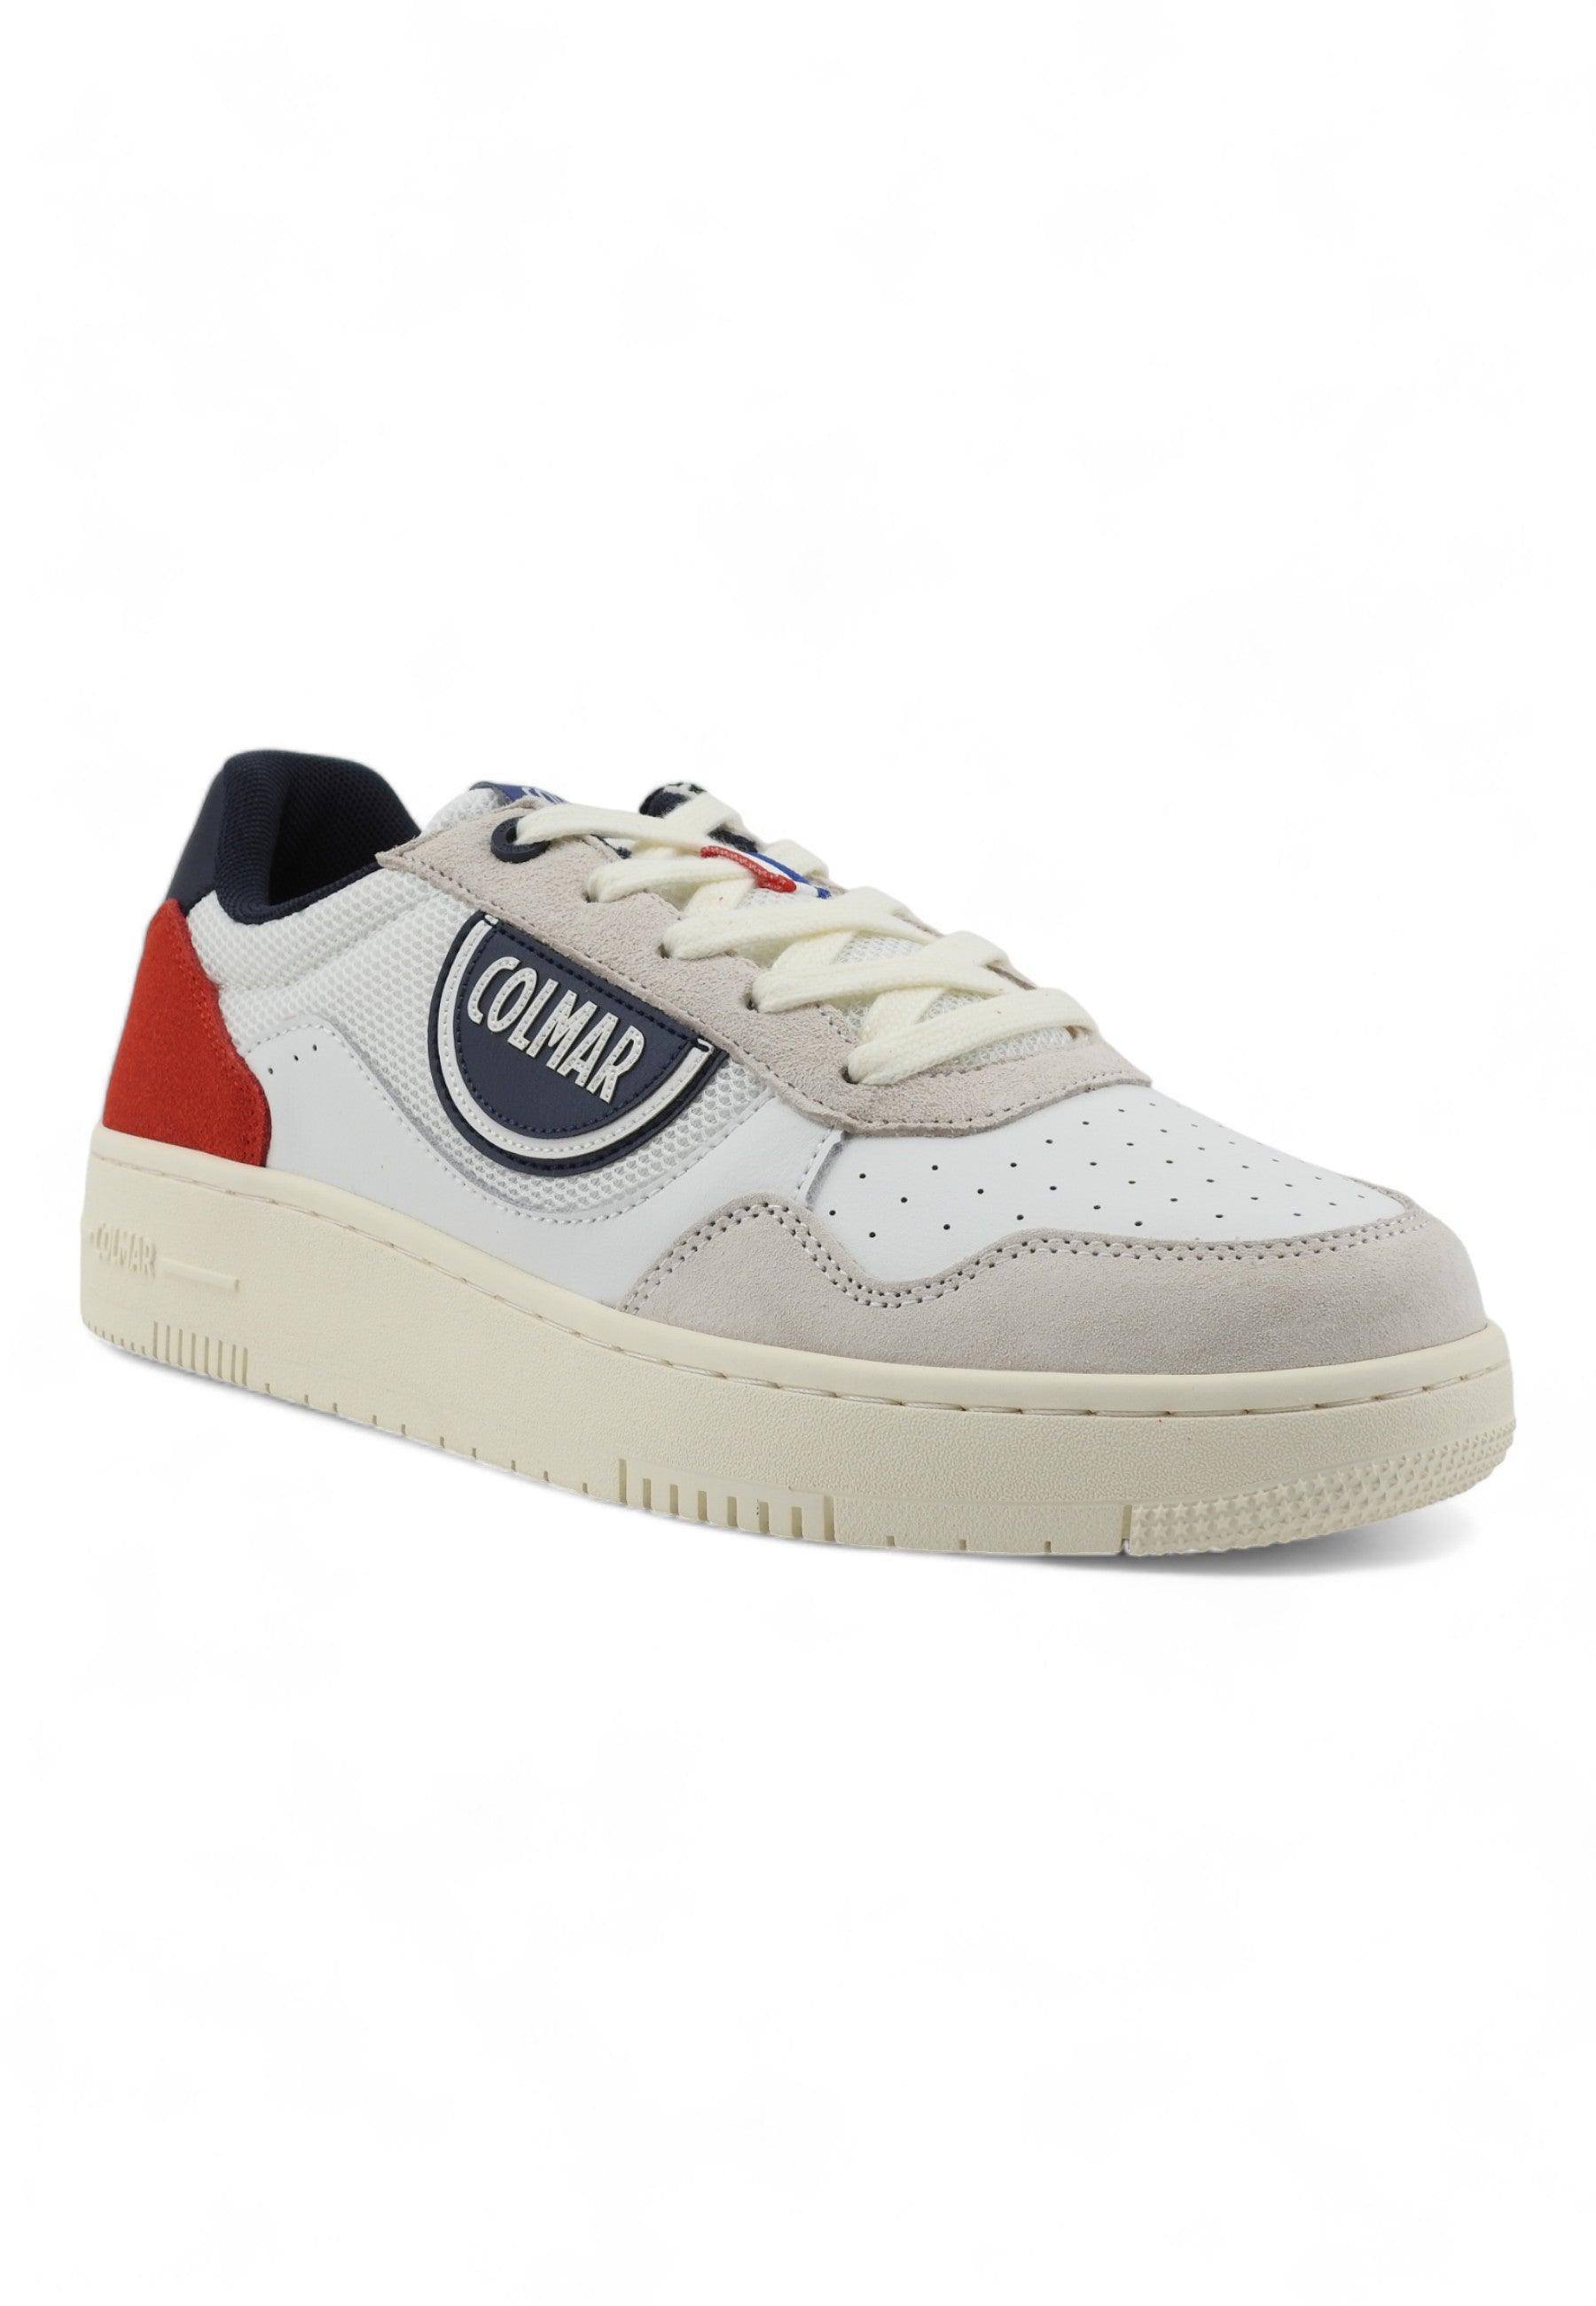 COLMAR Sneaker Uomo White Navy Red AUSTIN MASTER - Sandrini Calzature e Abbigliamento